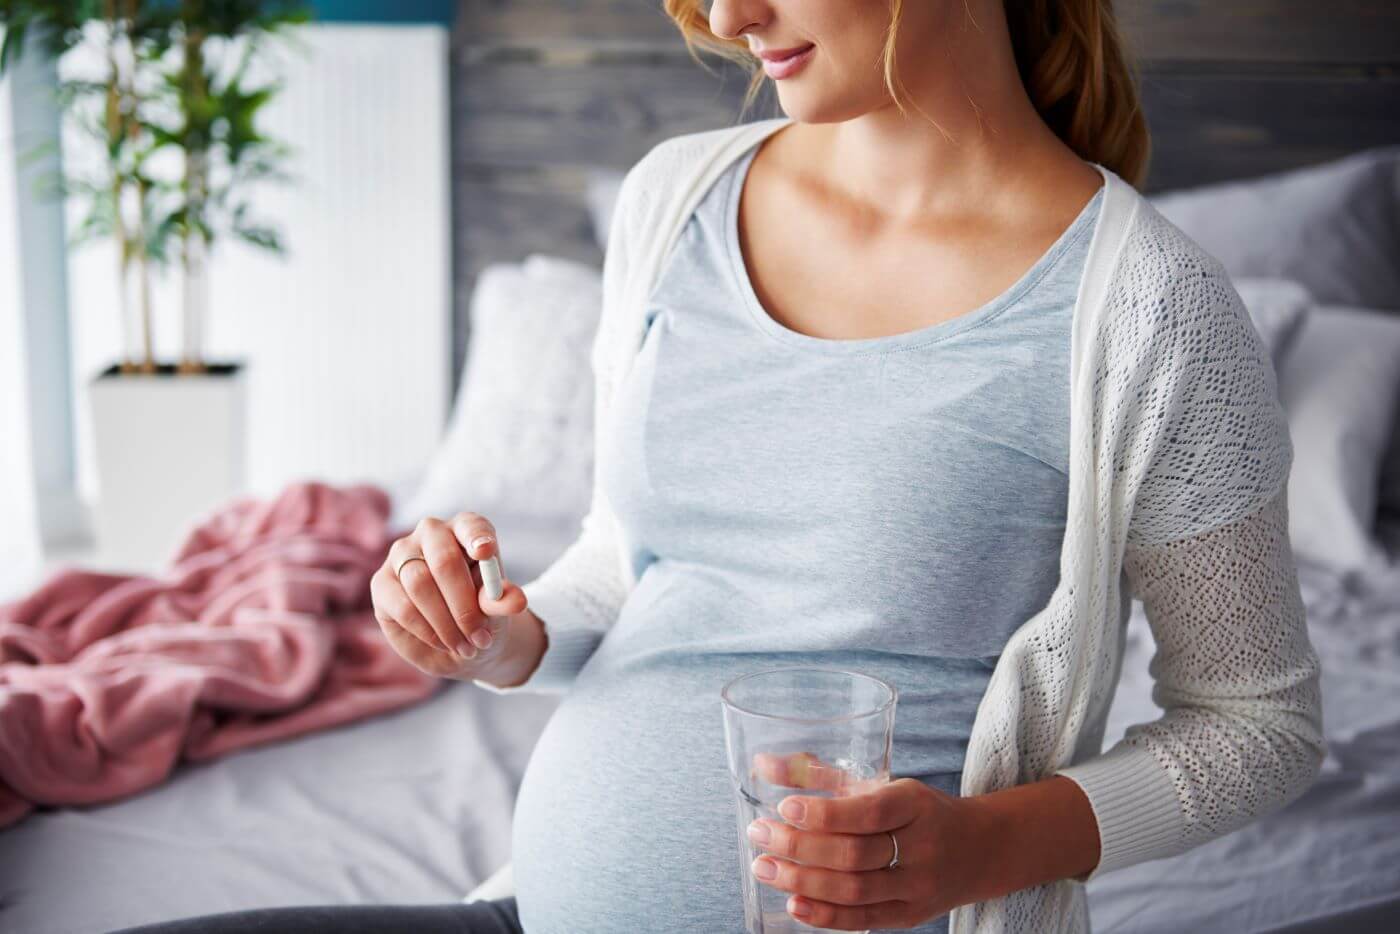 Acid folic in sarcina: De ce este important si cat timp se ia